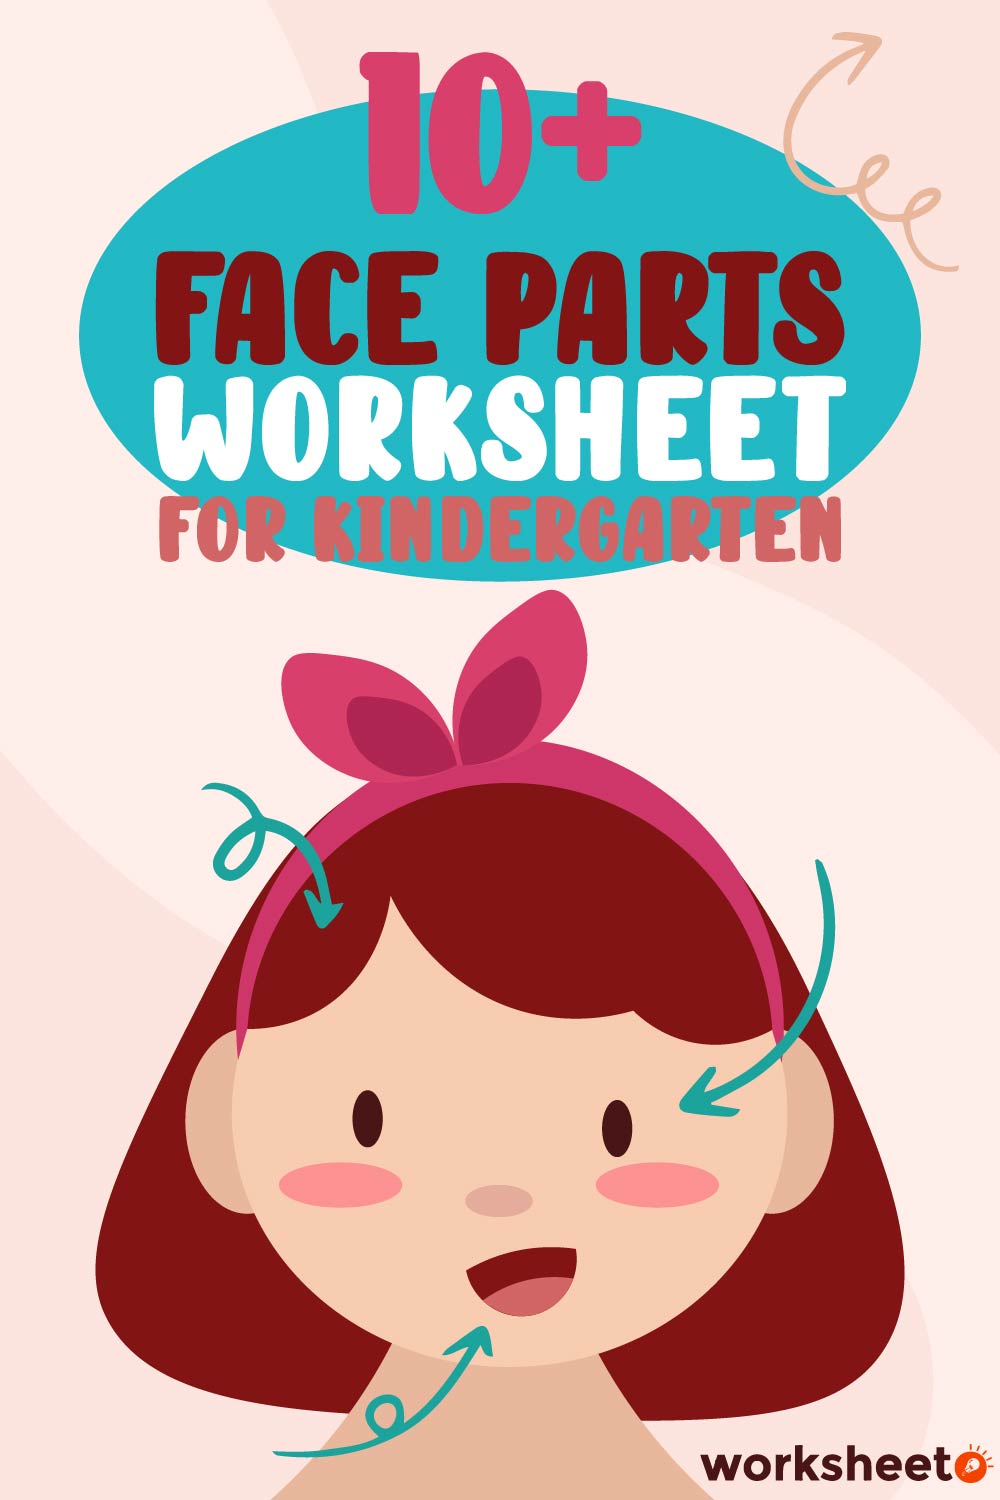 Face Parts Worksheet for Kindergarten